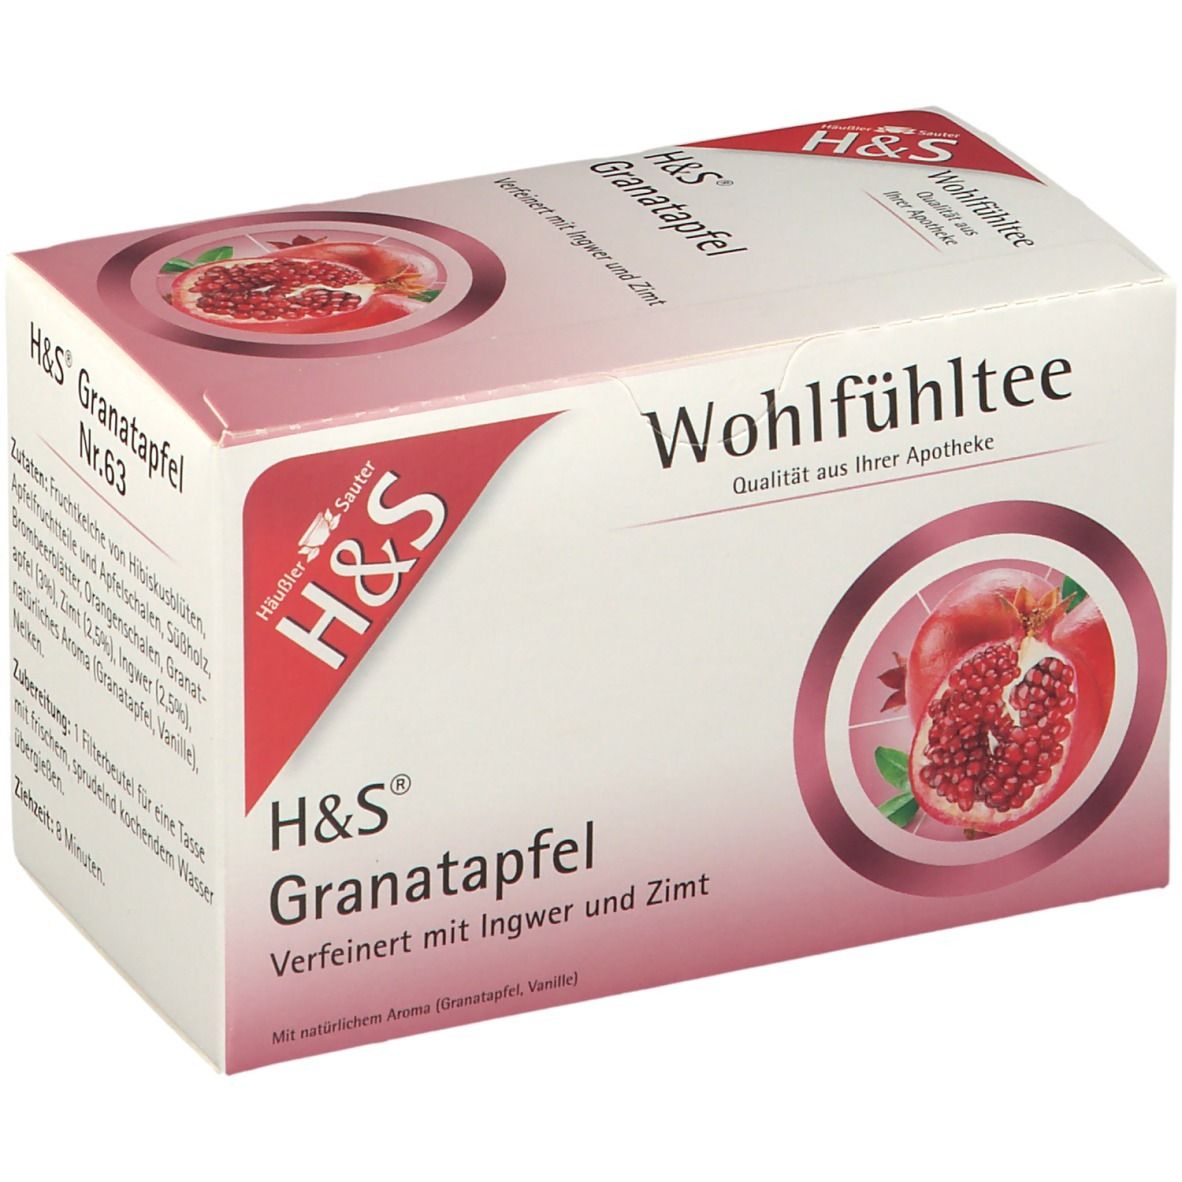 H&S Granatapfel Nr. 63